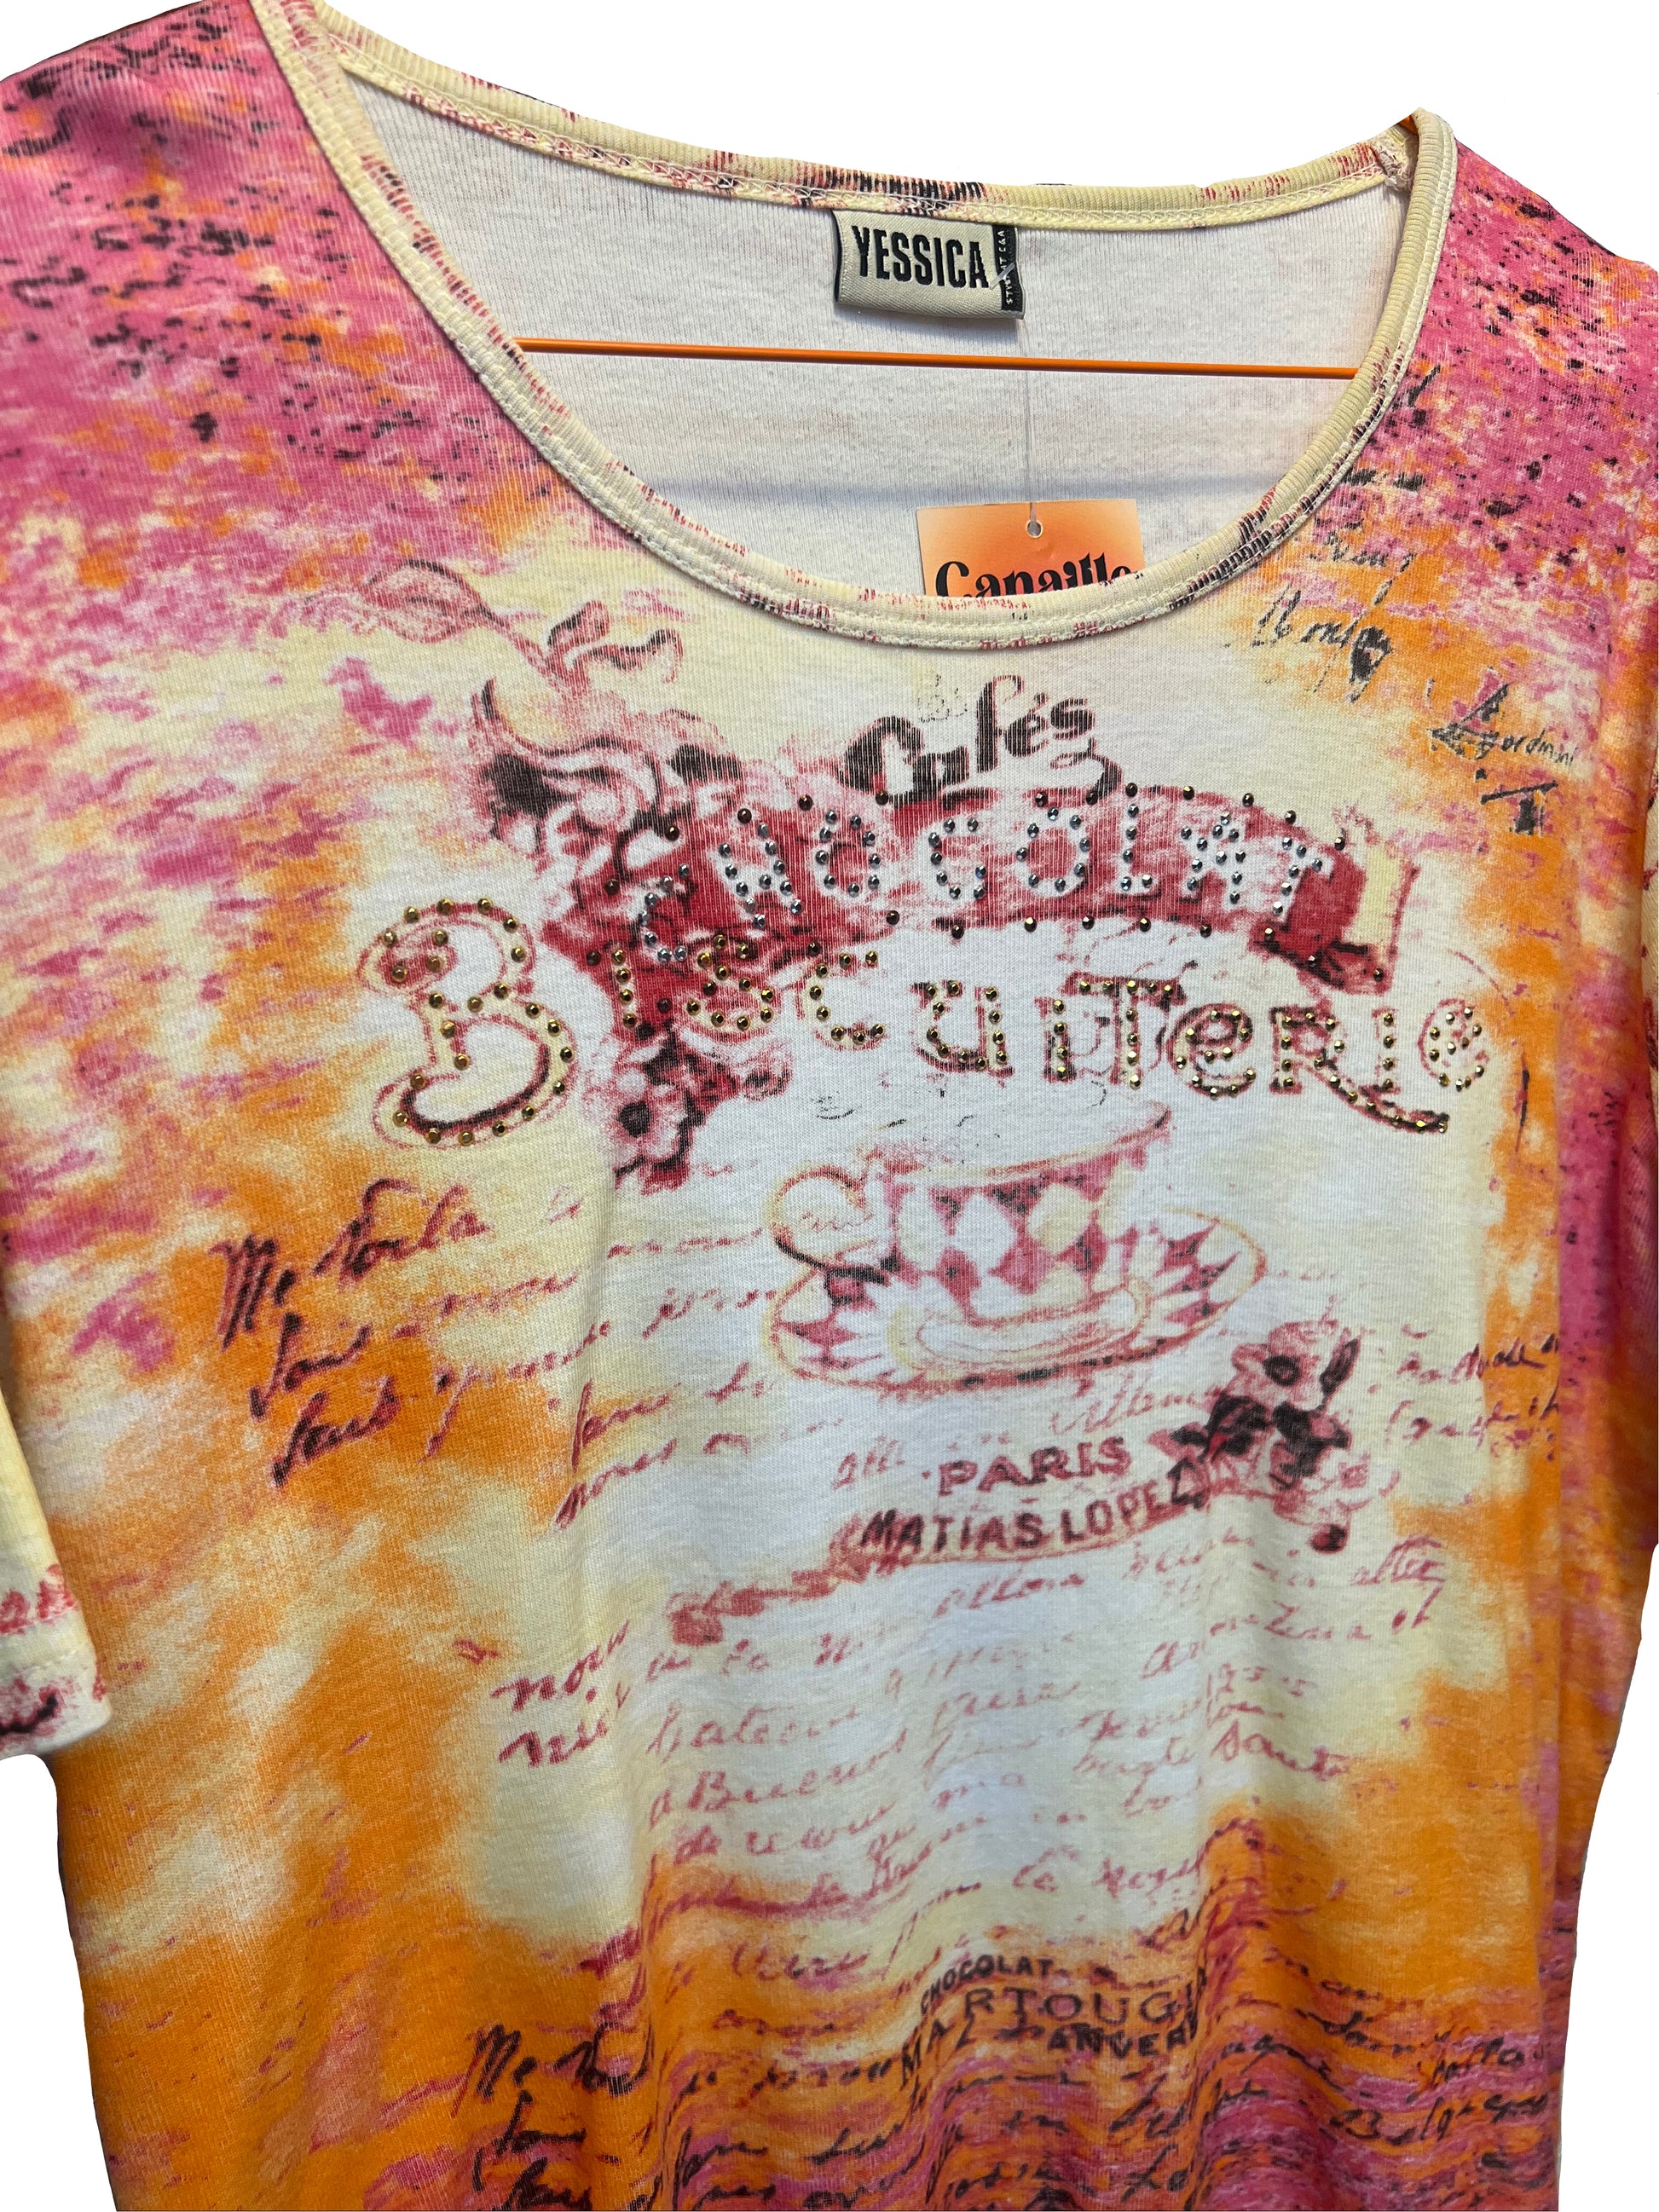 tee shirt à motis et strass, de couleur beige rose et orange. A retrouver à la friperie Canaille Vintage à Bordeaux.